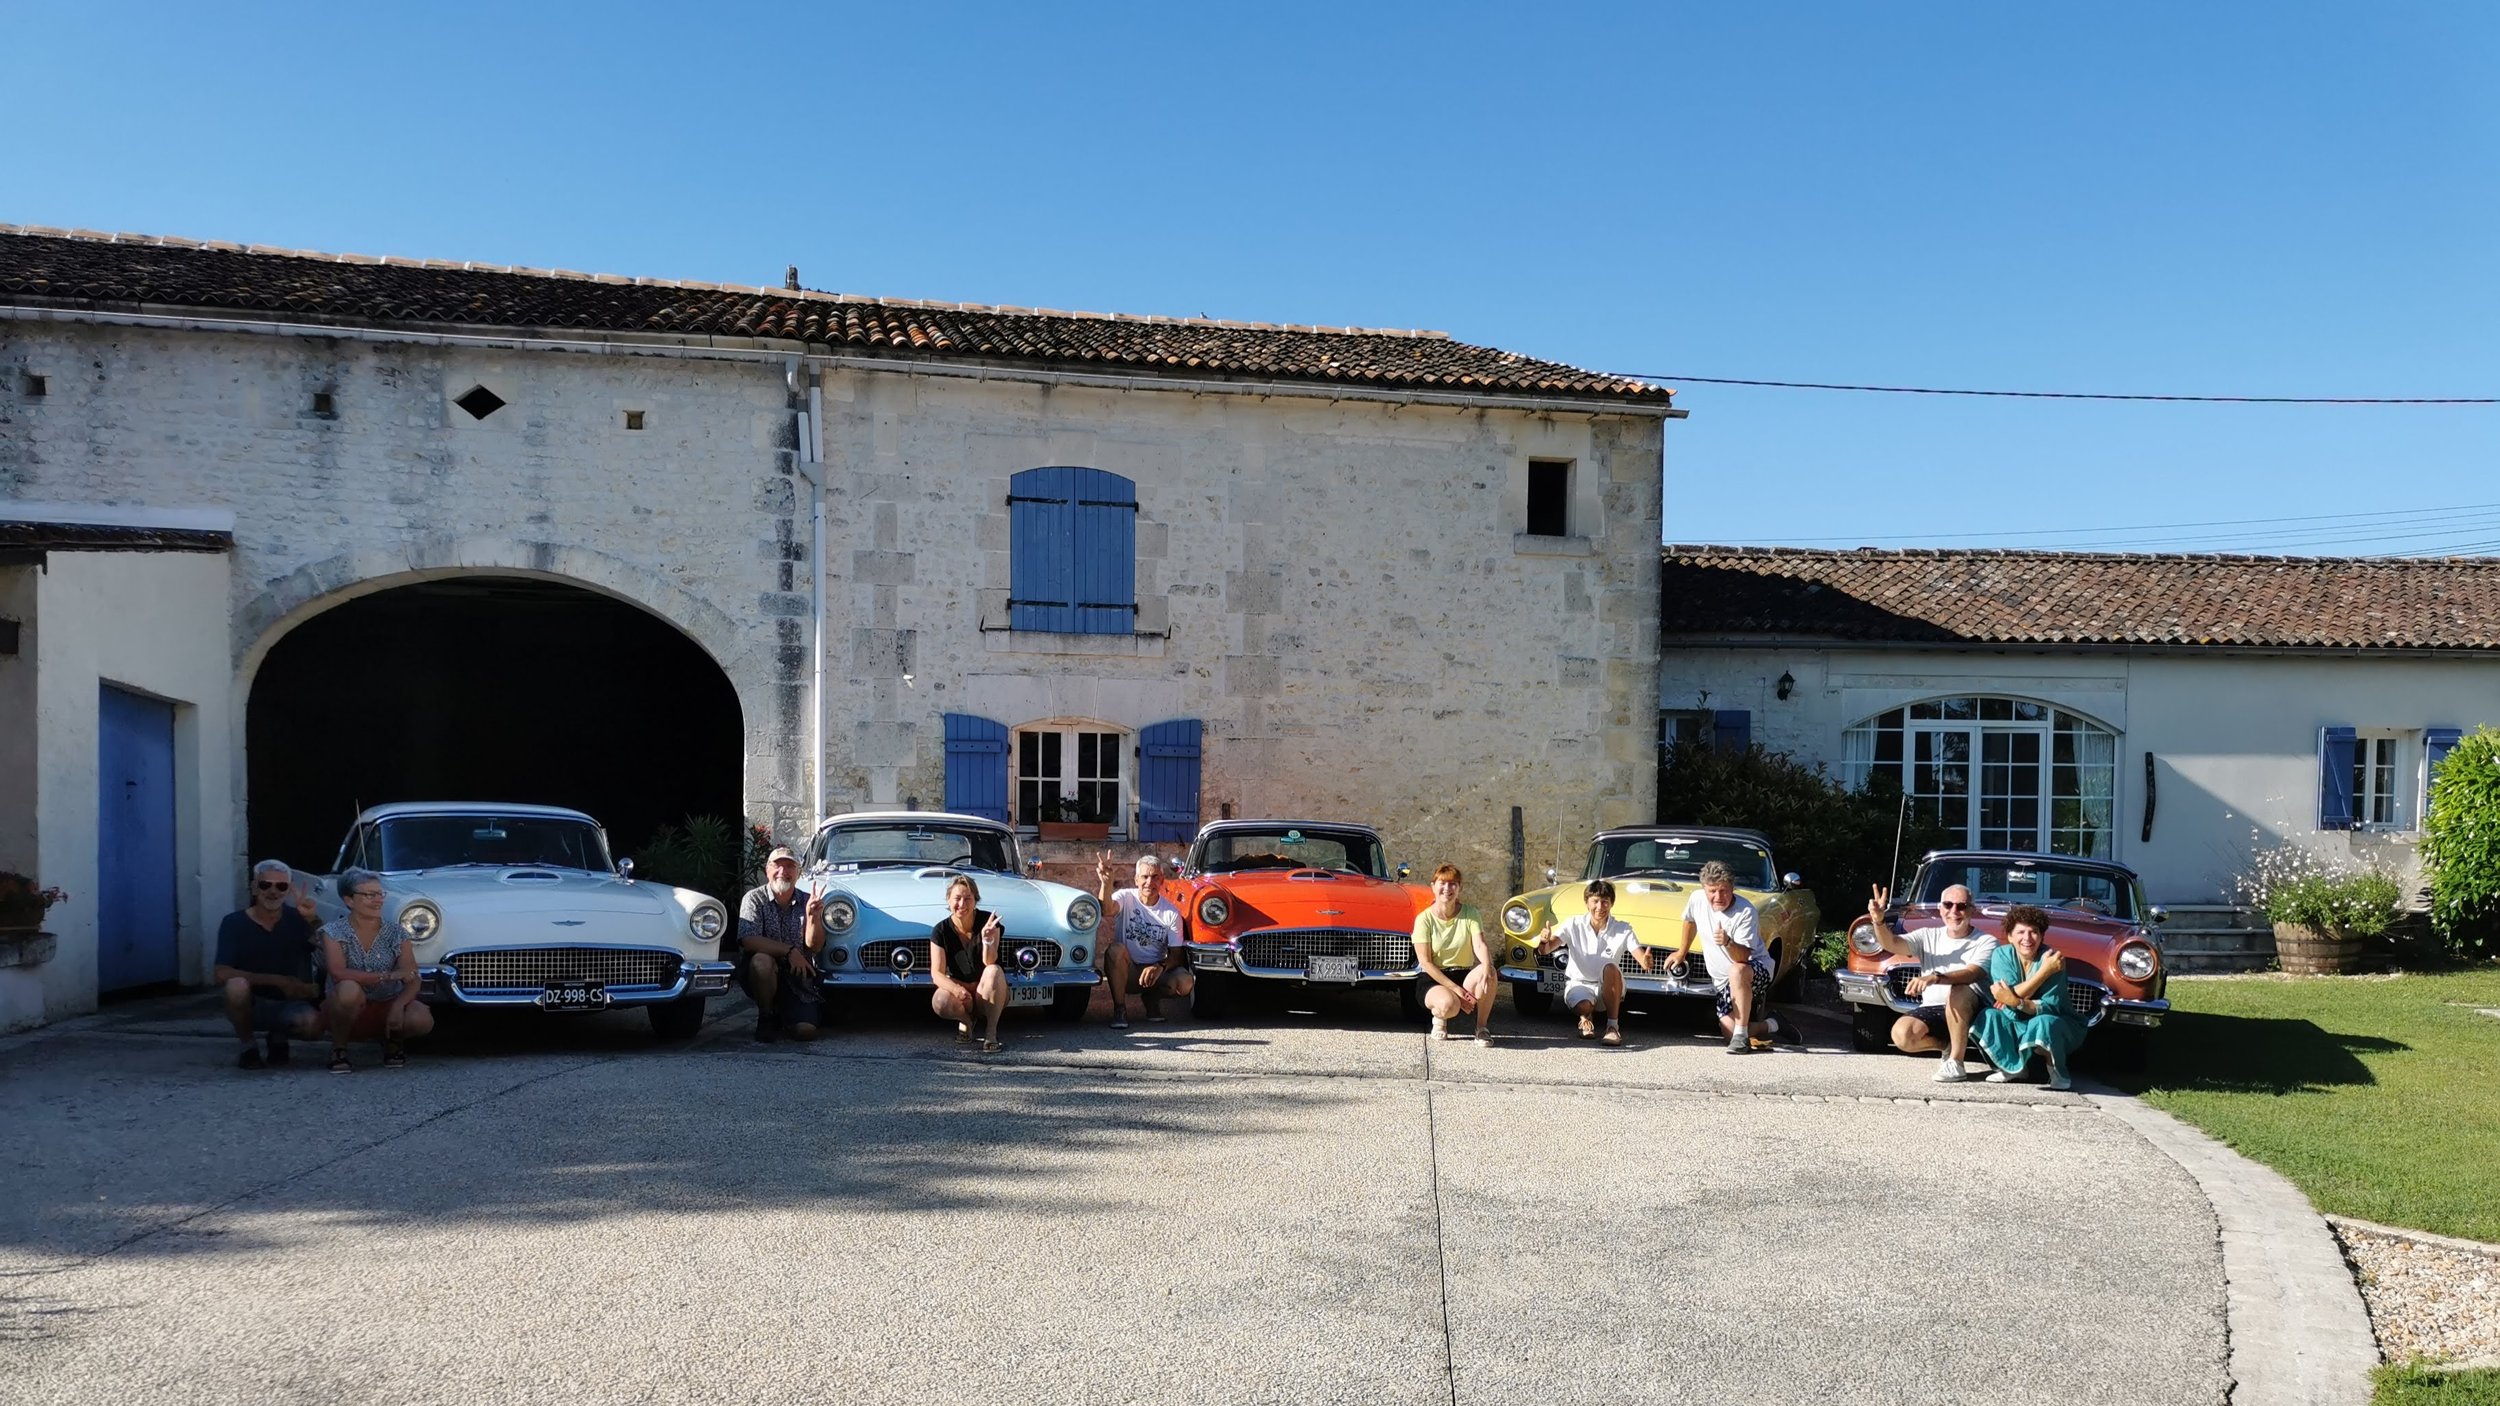 Thunderbird France Classic Car club